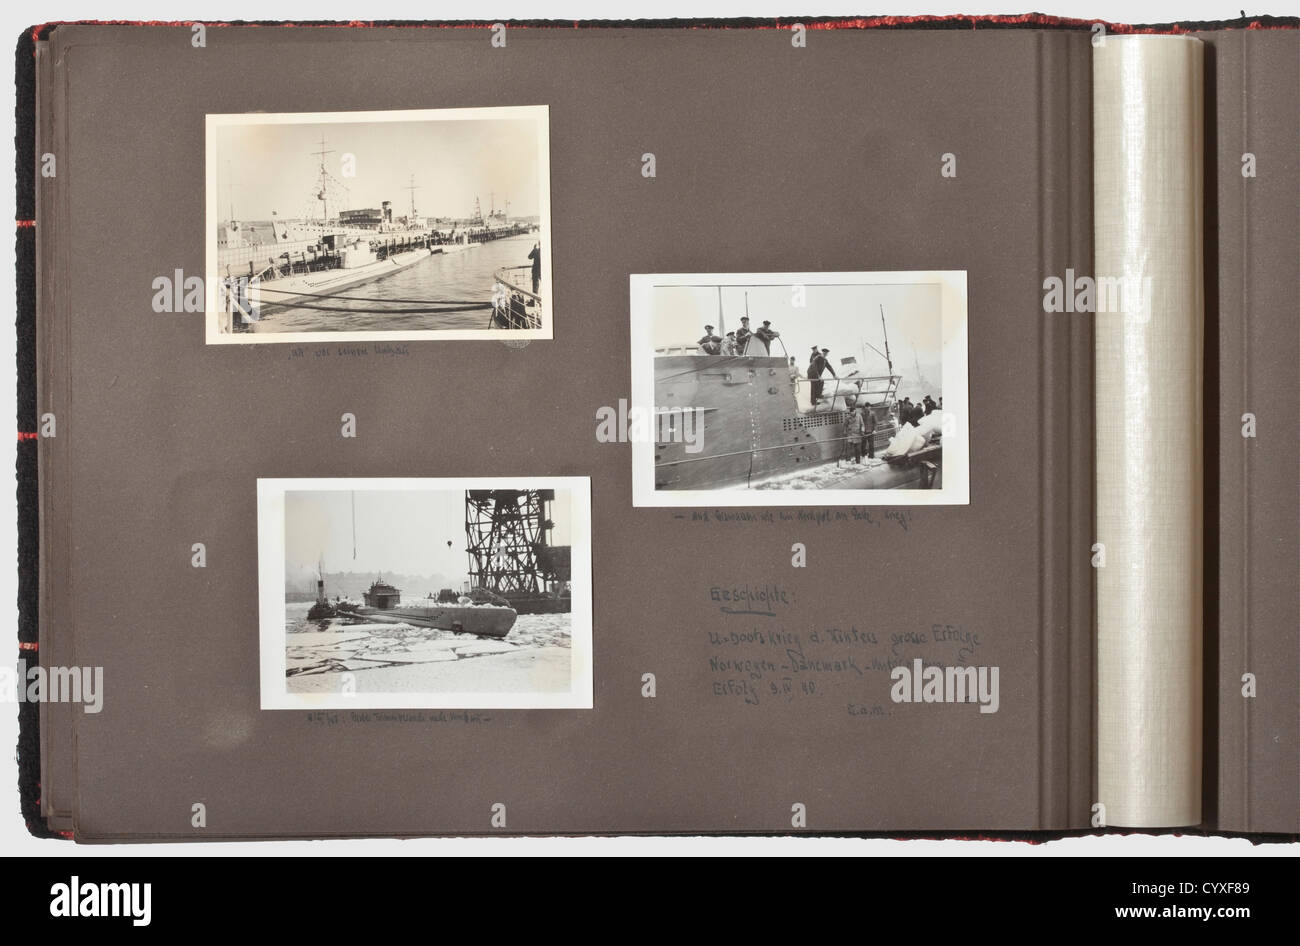 Vermächtnis des U-Boot Kommandanten Hans Cohausz,14 Fotoalben zum Marine-  und U-Boot-Dienst INSGESAMT 14 Alben mit über 2,500 Fotografien aus der  Zeit 1913 - 1968,militärische und zivile Bilder, von denen einige  eingeschrieben sind.